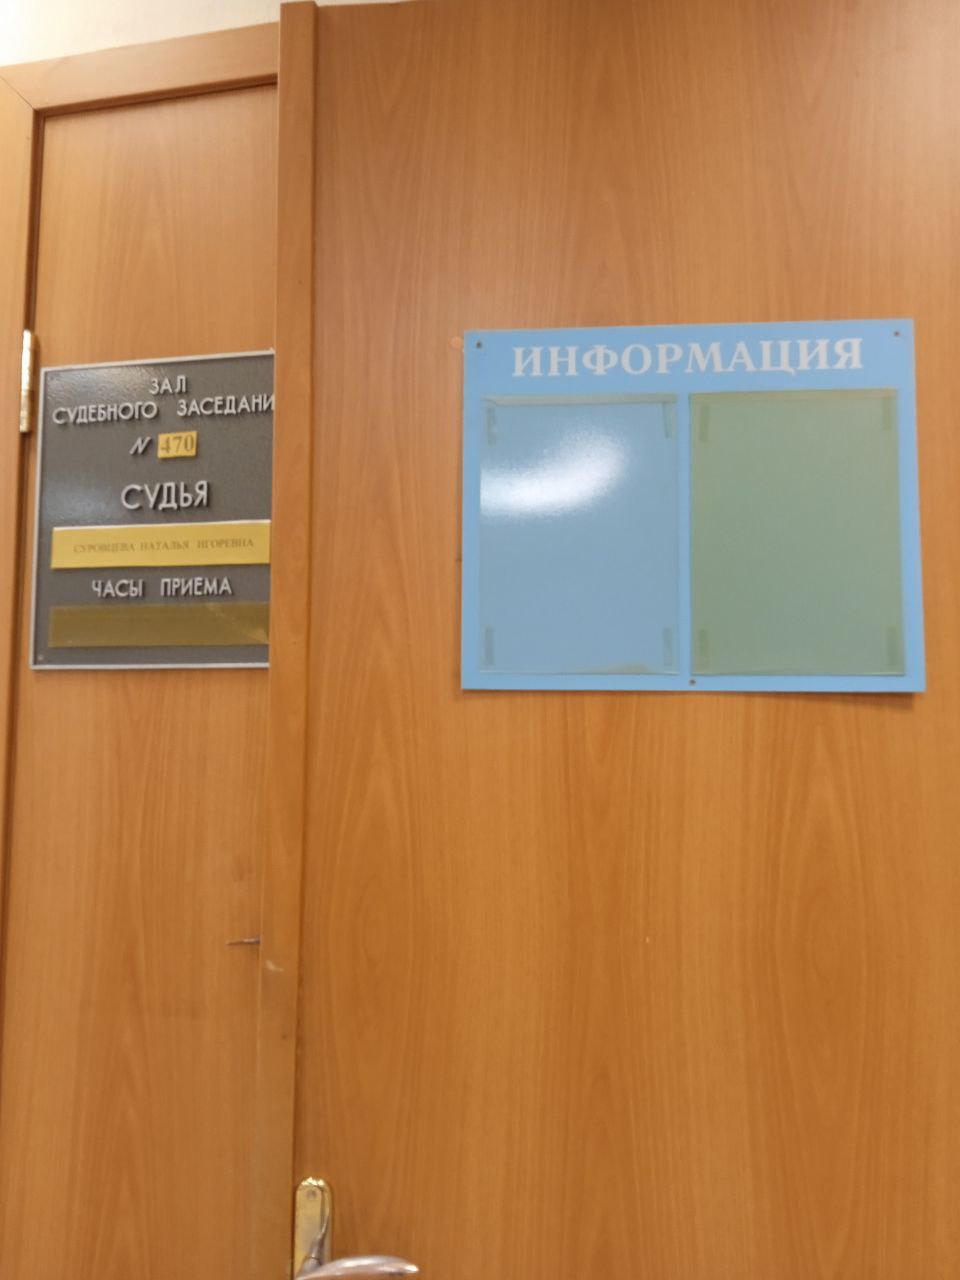 Гайва Тихомирова: допрос сына подсудимой и оглашение показаний дочери